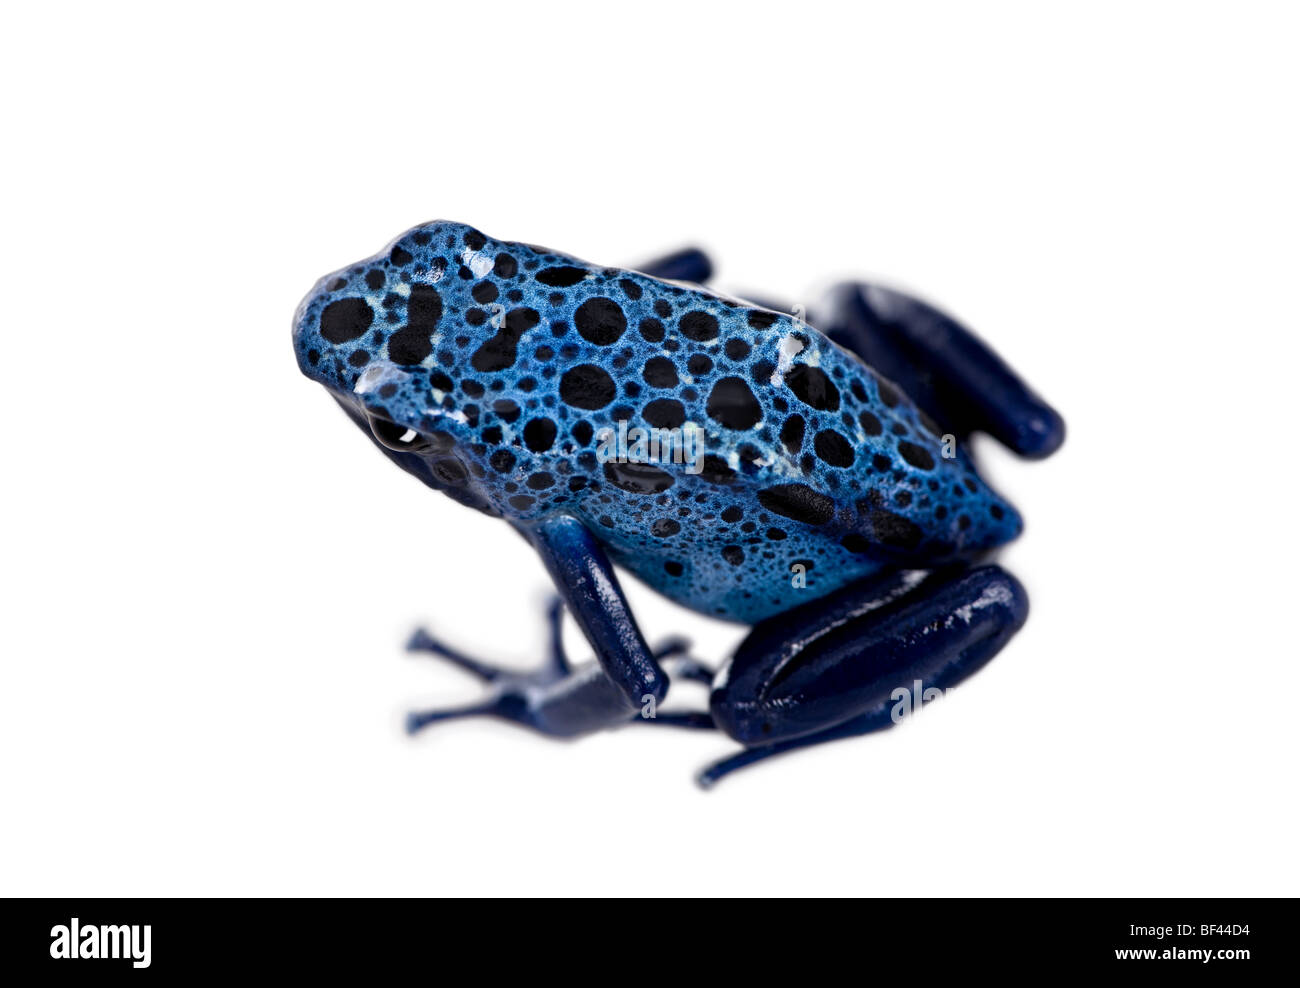 Blue poison dart frog, Dendrobates azuresus, delante de un fondo blanco, Foto de estudio Foto de stock